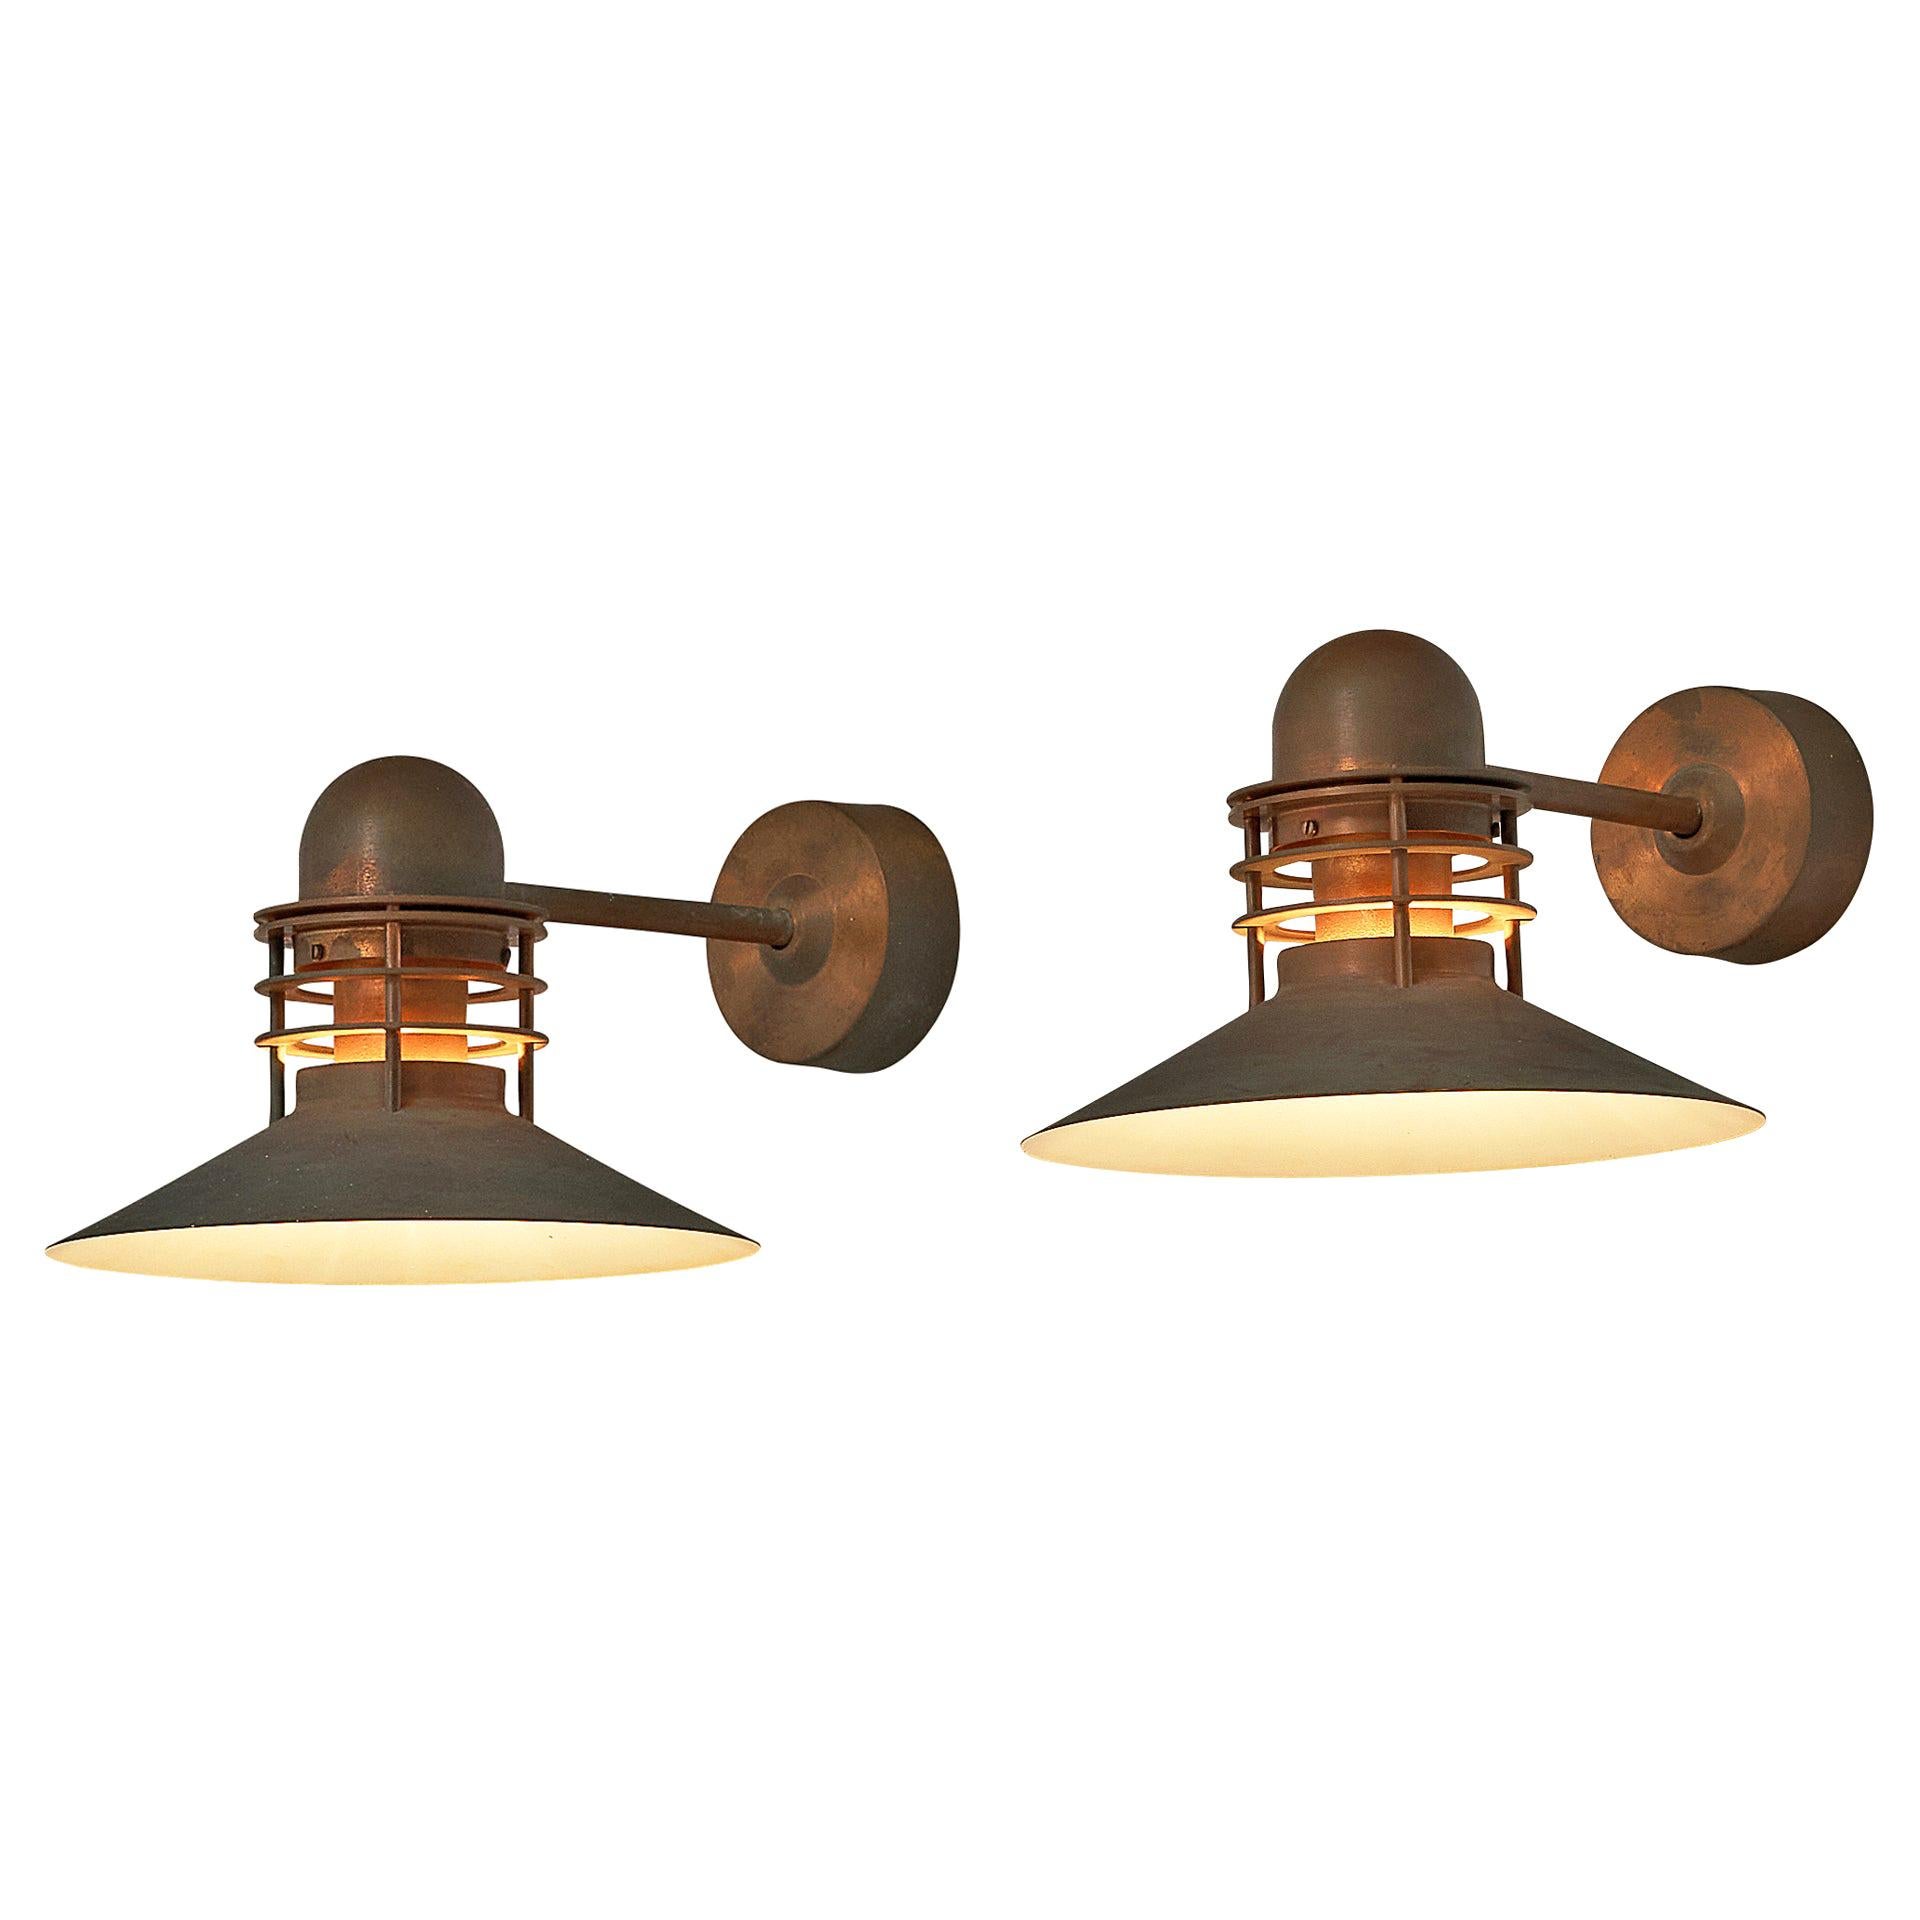 Homann & Kjær for Louis Poulsen Wall Lamps ‘Nyhavn’ in Copper